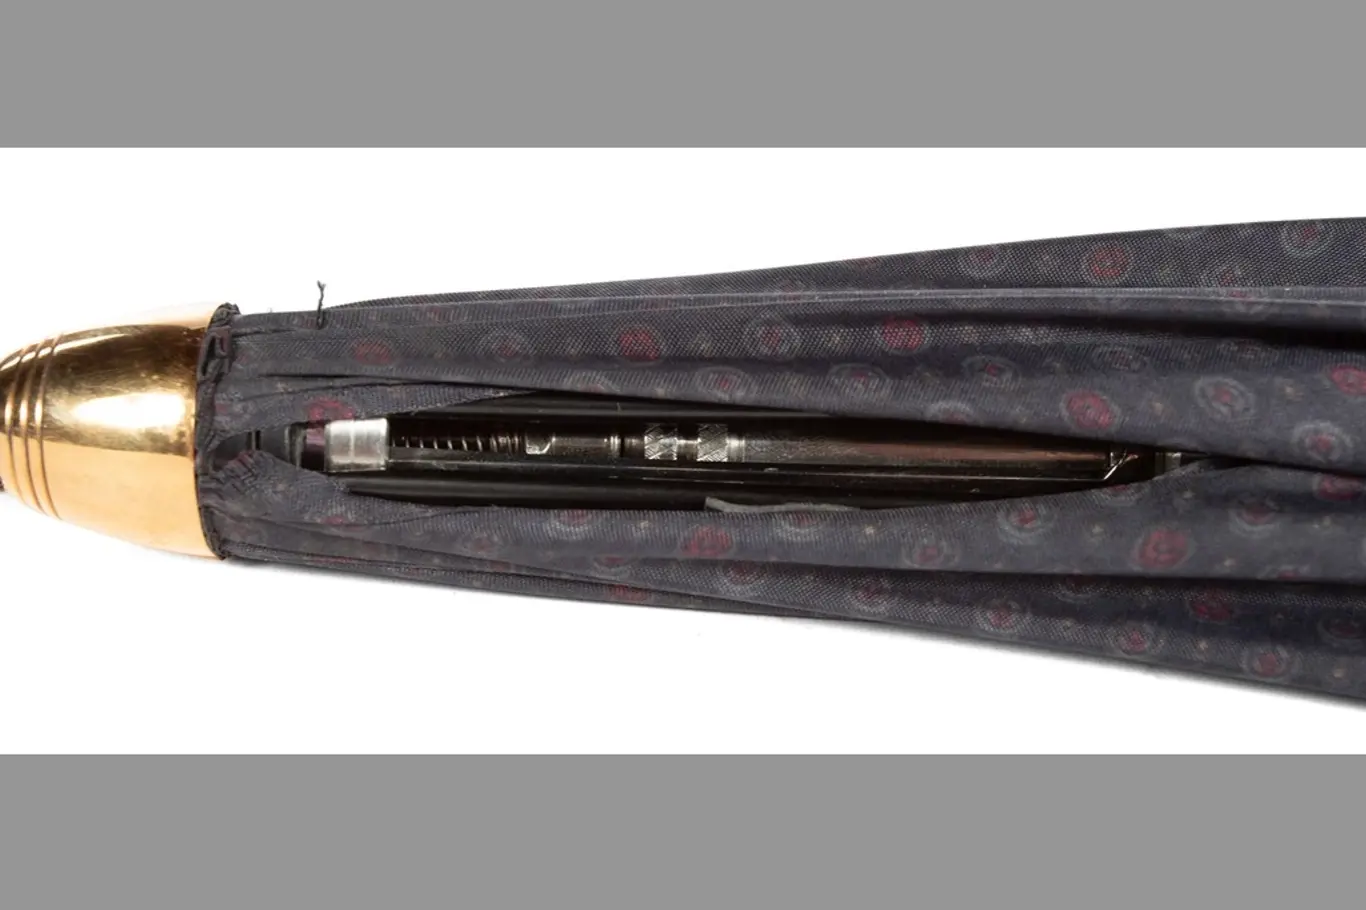 Deštník byl údajně používán ve spojení s atentátnicí, tedy většinou ženou, i když to není výlučné, která přistupovala k cíli a iniciovala polibek na tvář.